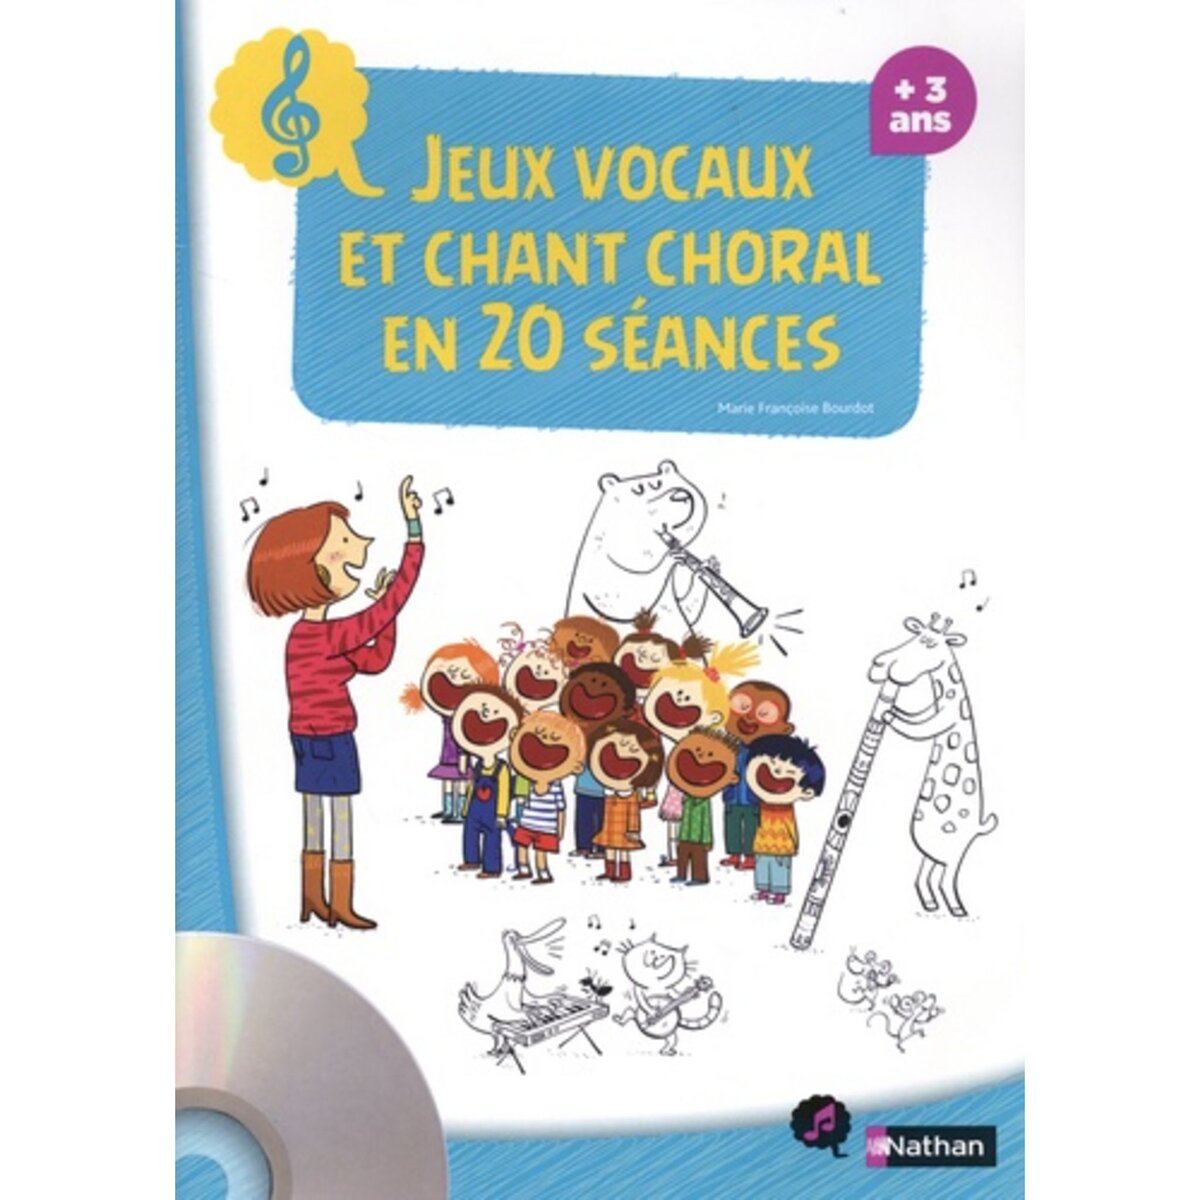  JEUX VOCAUX ET CHANT CHORAL EN 20 SEANCES. AVEC 1 CD AUDIO, Bourdot Marie-Françoise